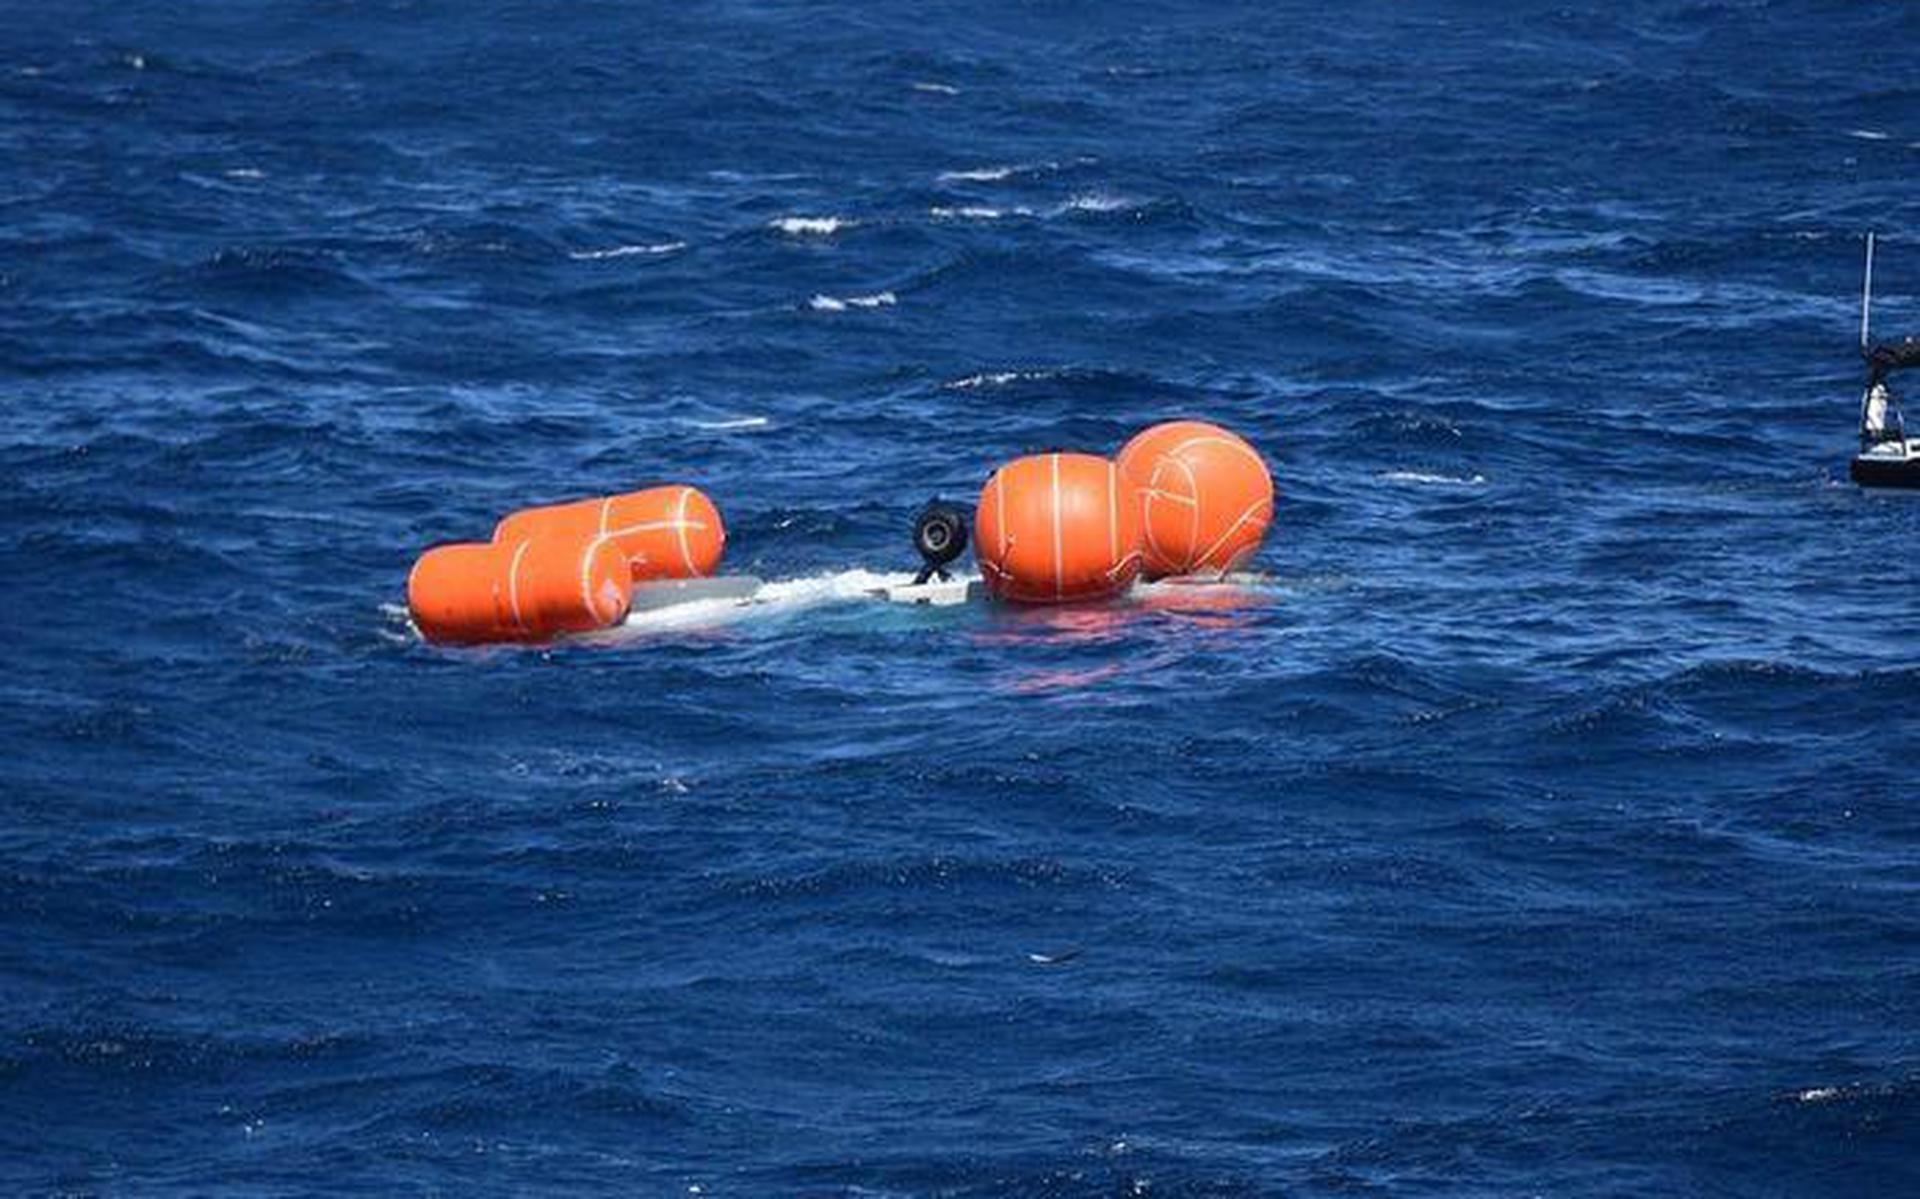  De NH90 die crashte voor de kust van Aruba hangt op zijn kop onder water aan vier ballonnen. Door harde wind en hoge golven was het moeilijk om het toestel te bergen.